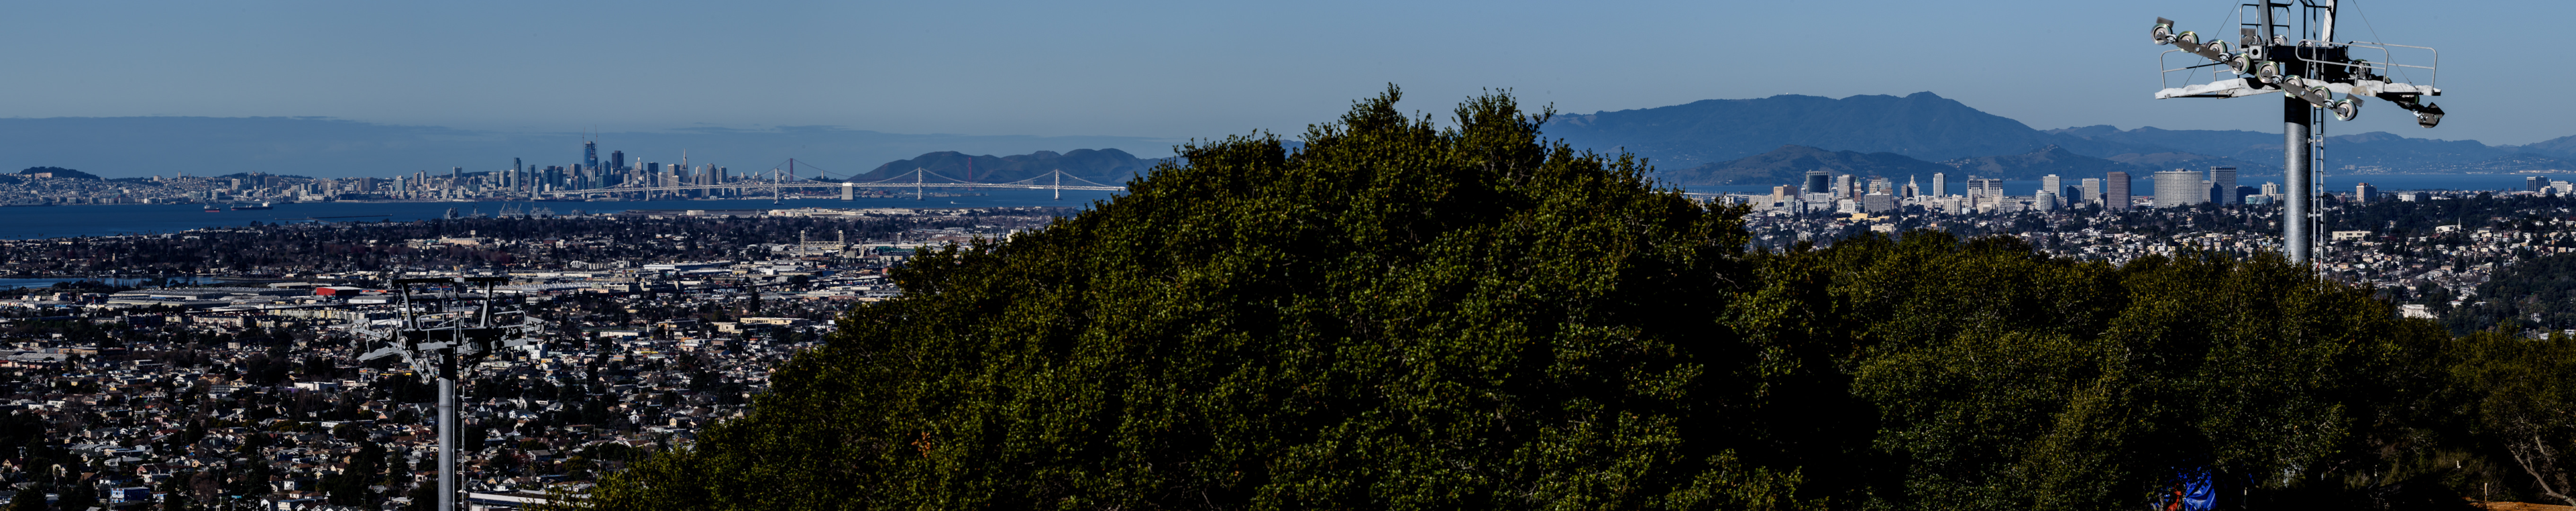 Vue de Bison Overlook sur la ville d'Oakland, le Bay Bridge et San Francisco en arrière-plan